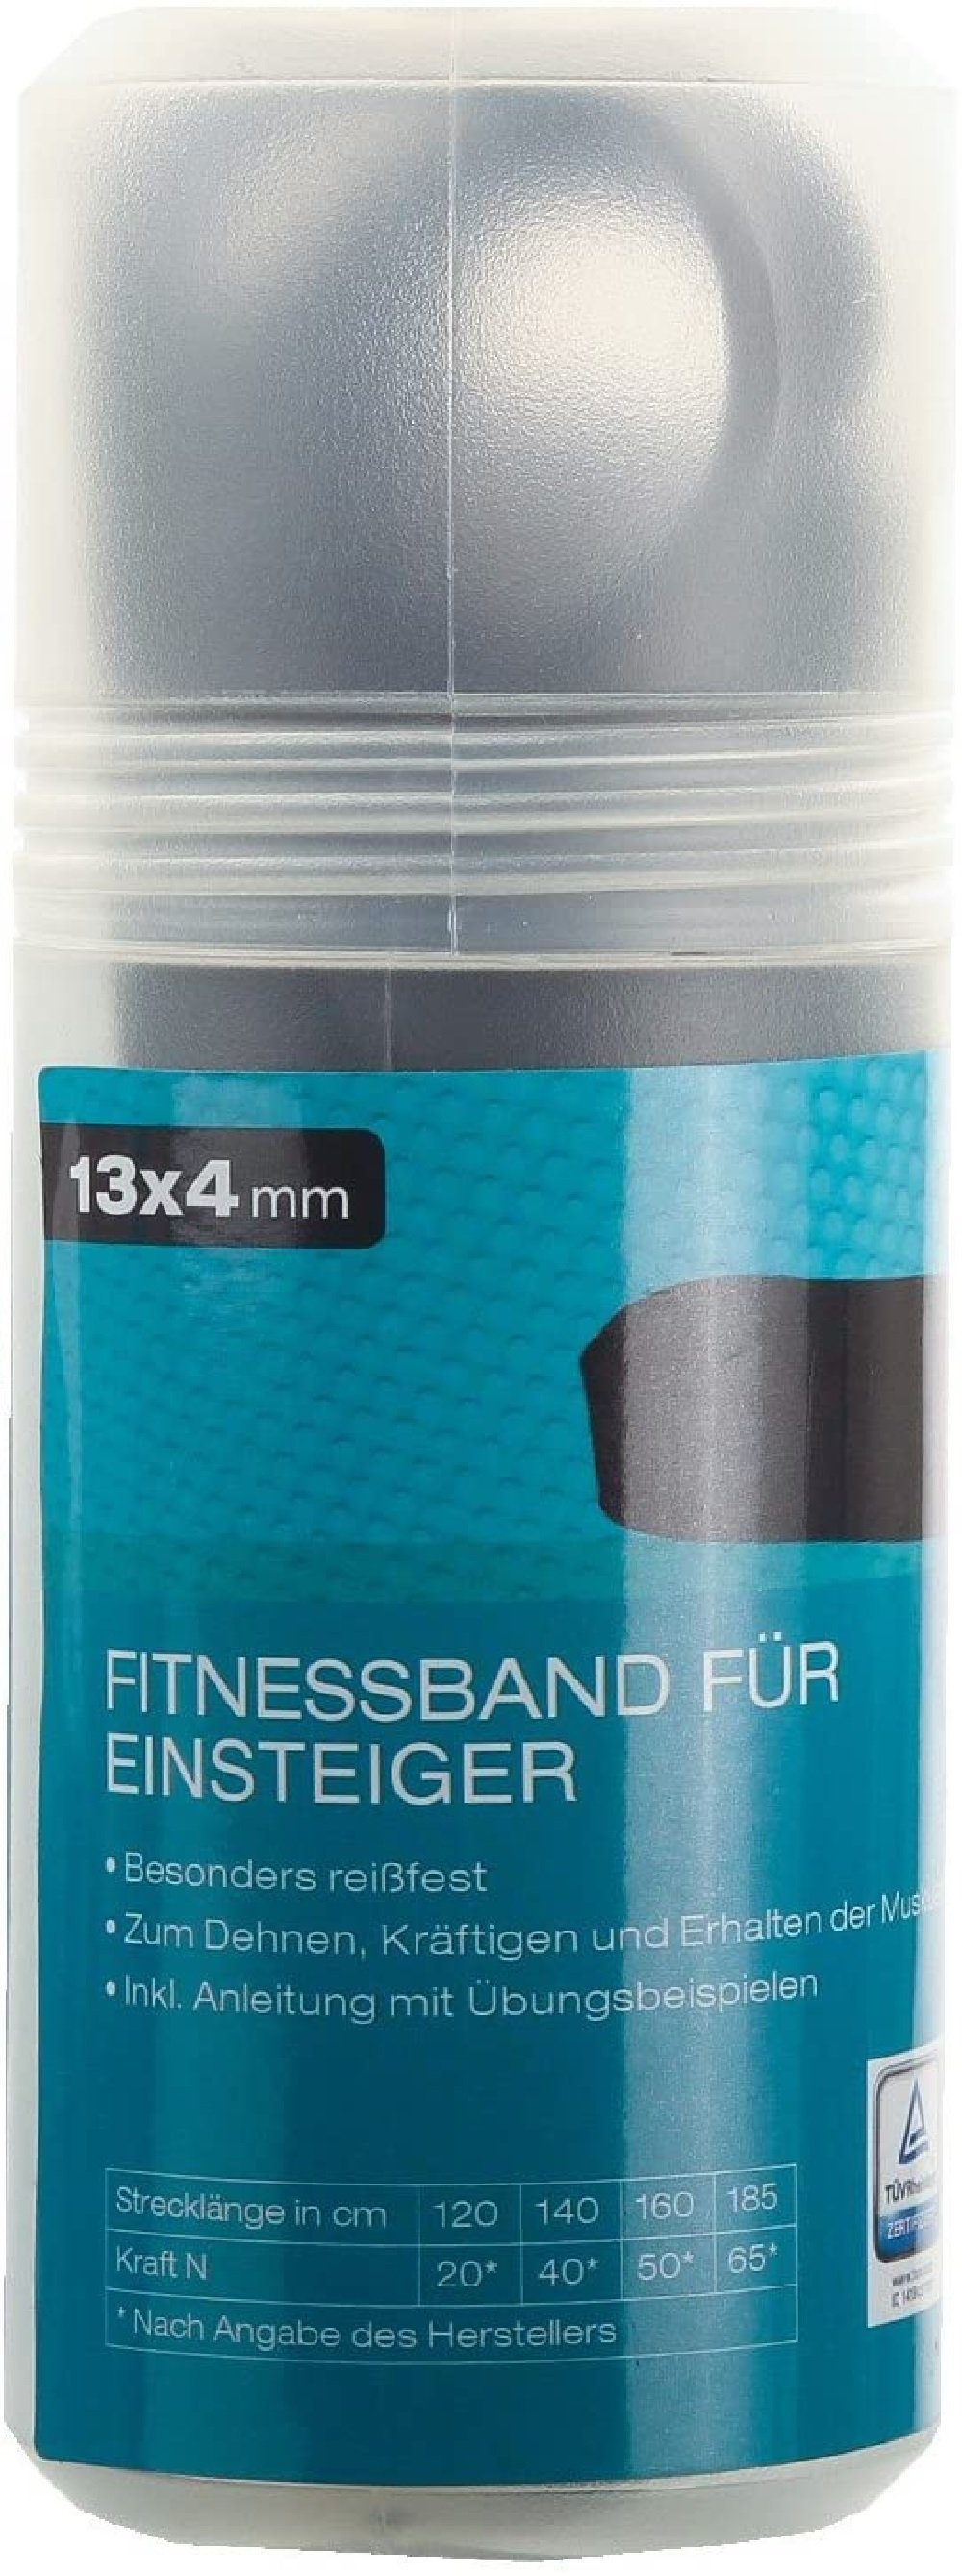 JOKA international Fitnessrolle FOR Sport Fitnessband (13x4mm),dehnbar 120-185cm,Farbe:schwarz ca. für Einsteiger